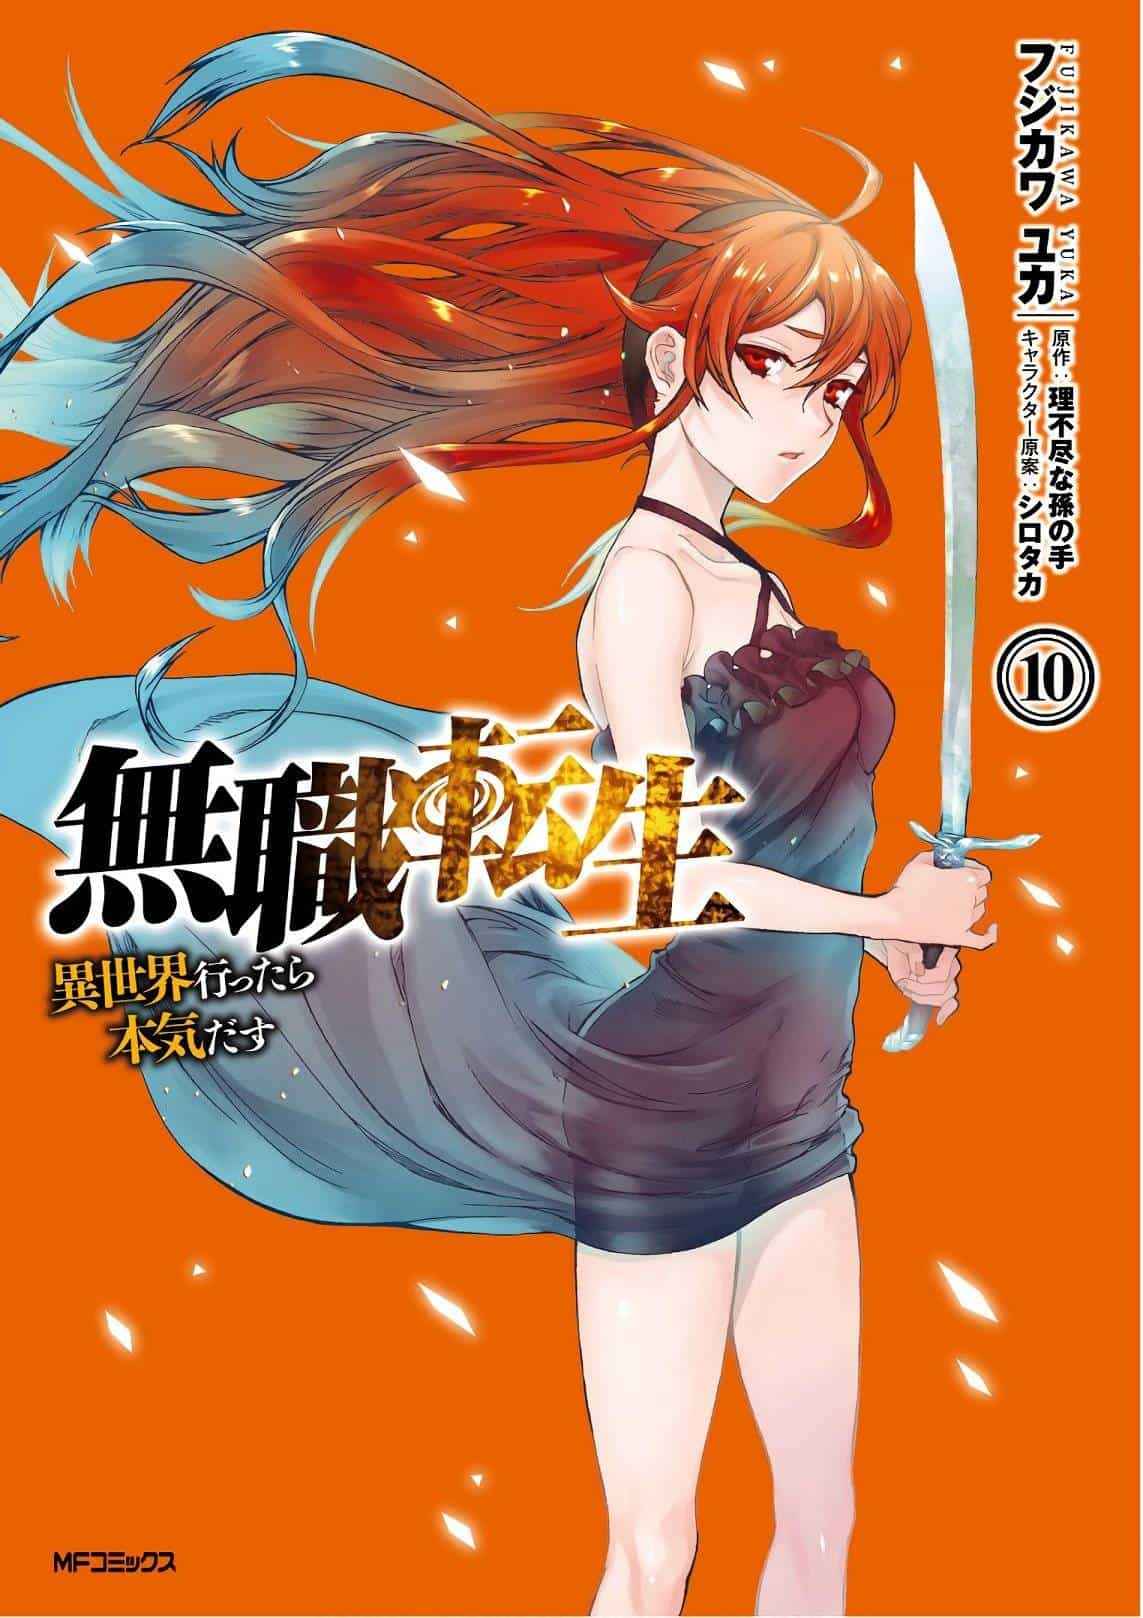 Descargar Mushoku Tensei Isekai Ittara Honki Dasu Manga PDF MEGA portada